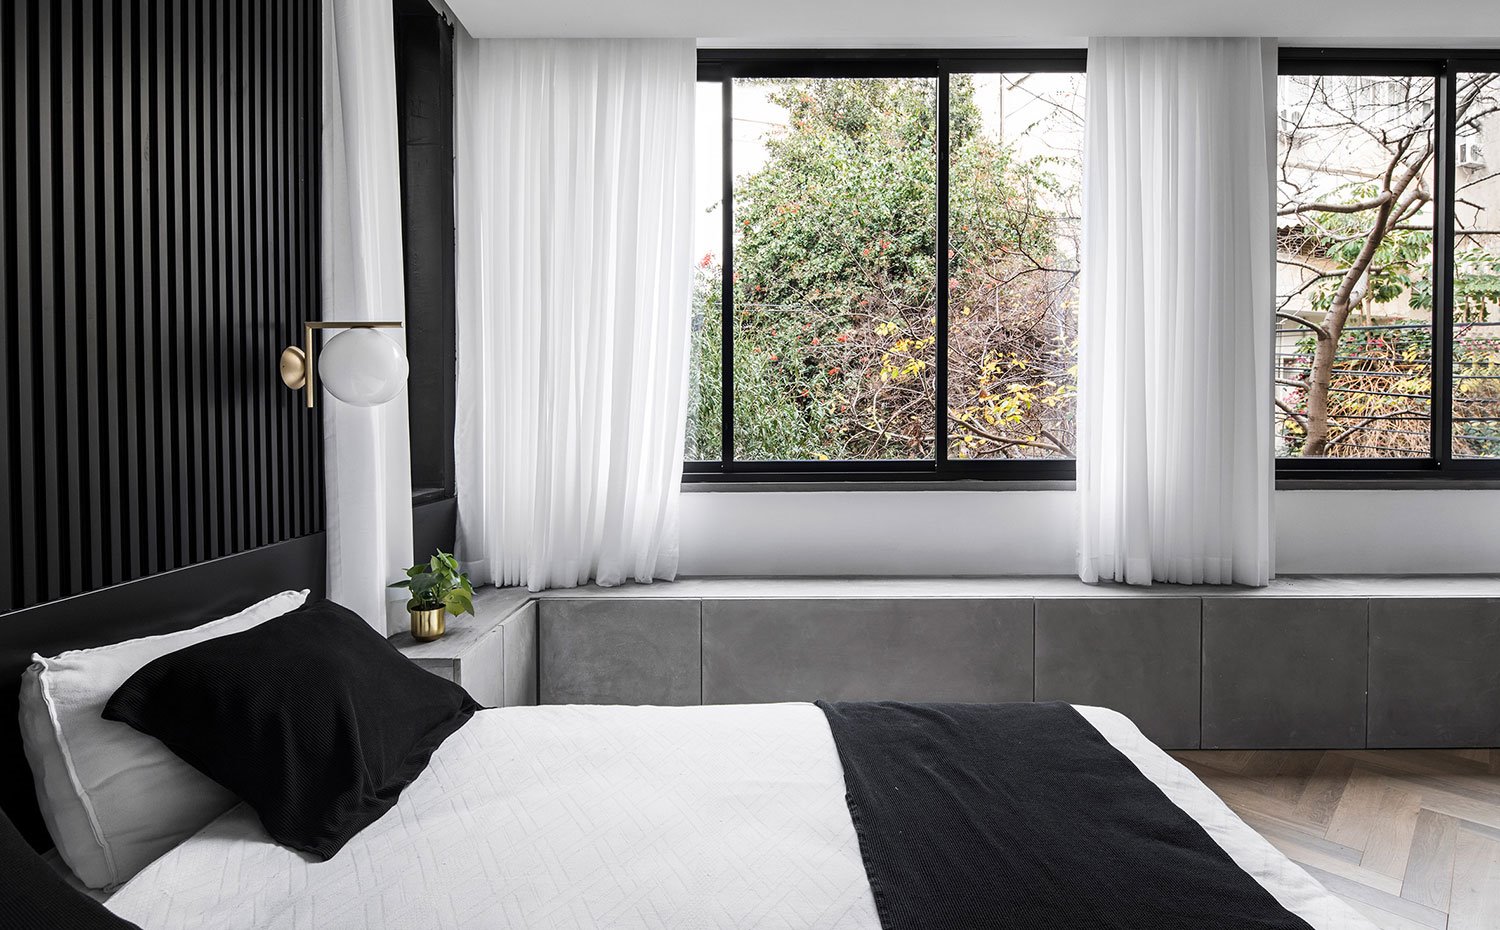 Dormitorio principal con cabecero negro en listones, grandes ventanales a exterior y módulos bajos en gris a lo largo de todo el perímetro